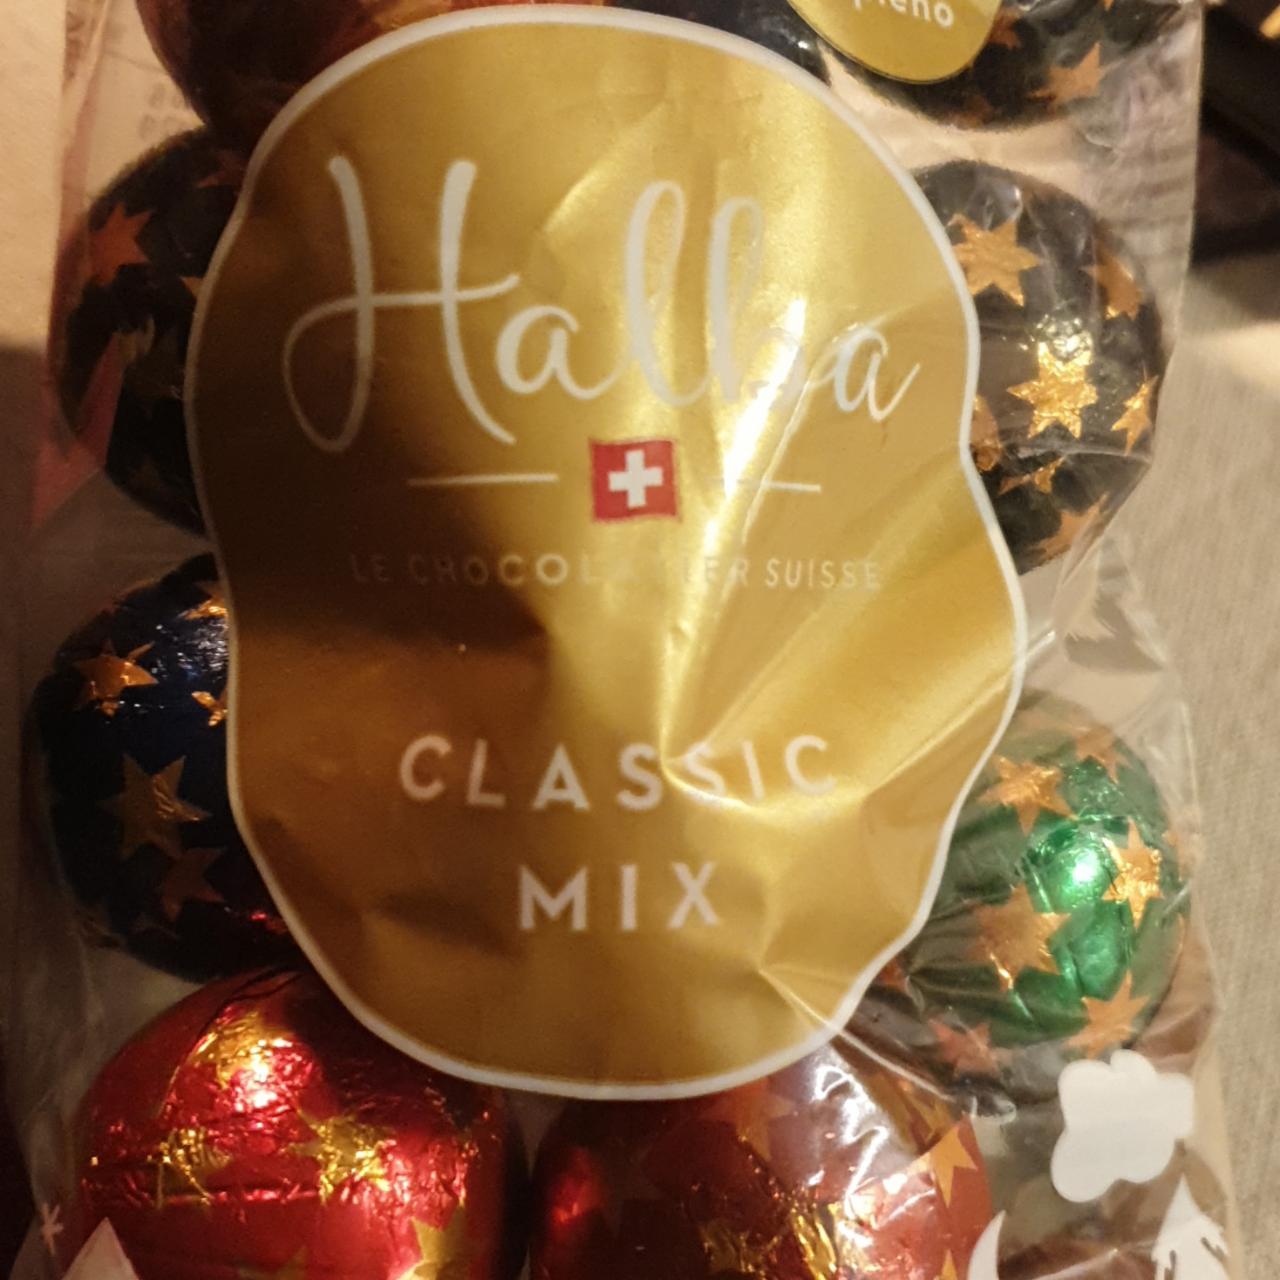 Фото - Halba le chocolatier suisse classic mix